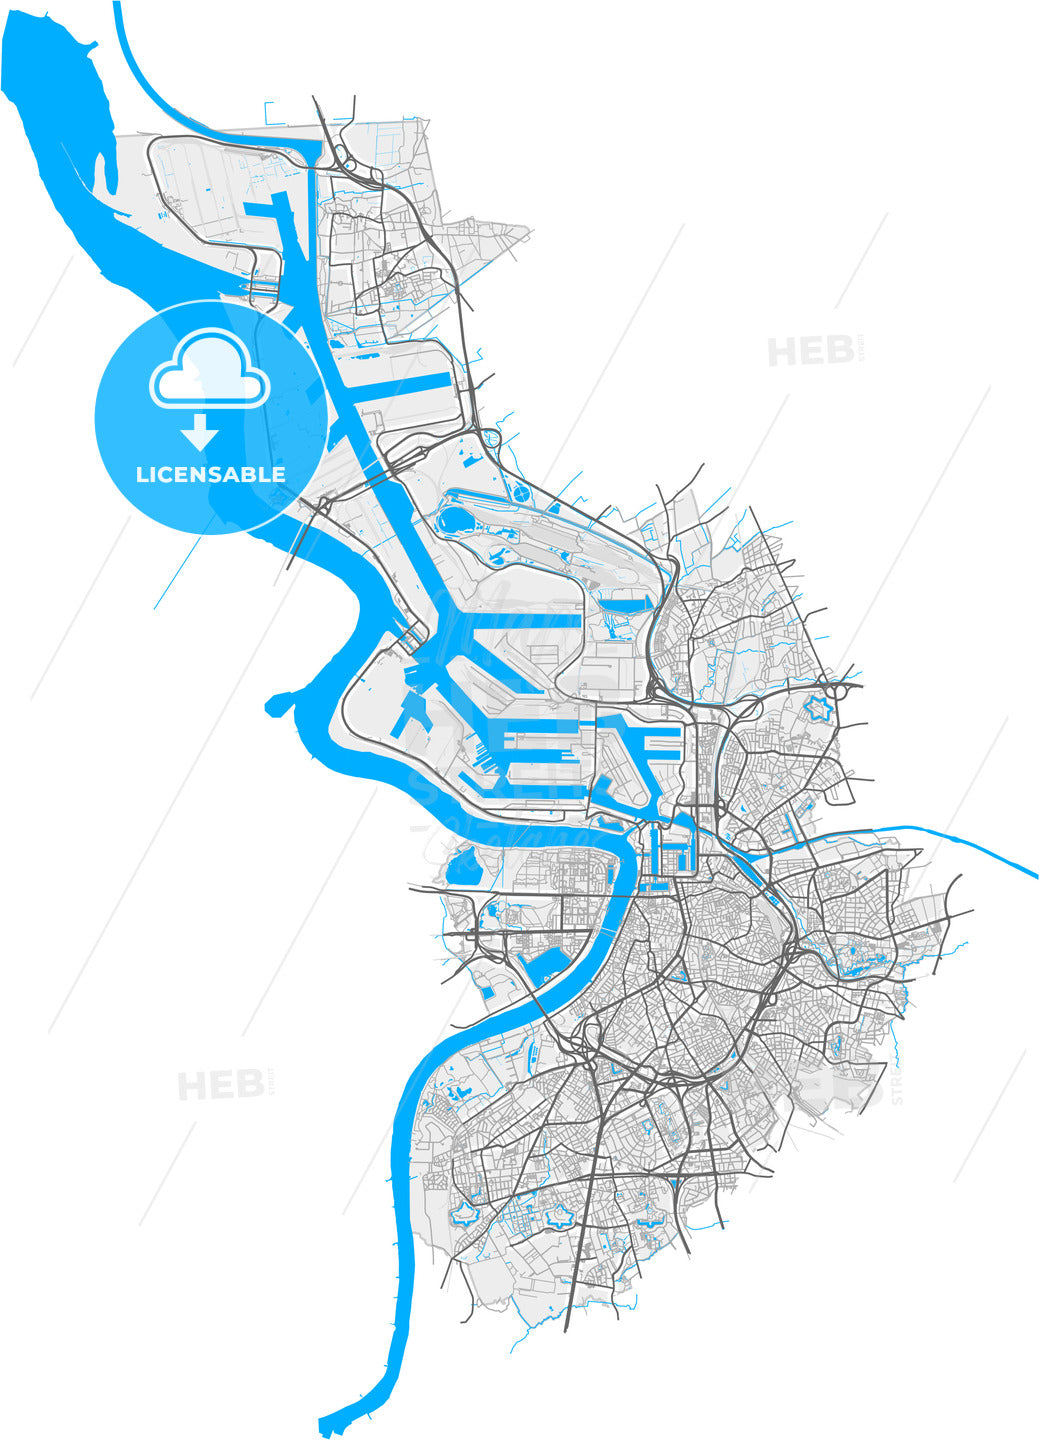 Antwerp, Antwerp, Belgium, high quality vector map